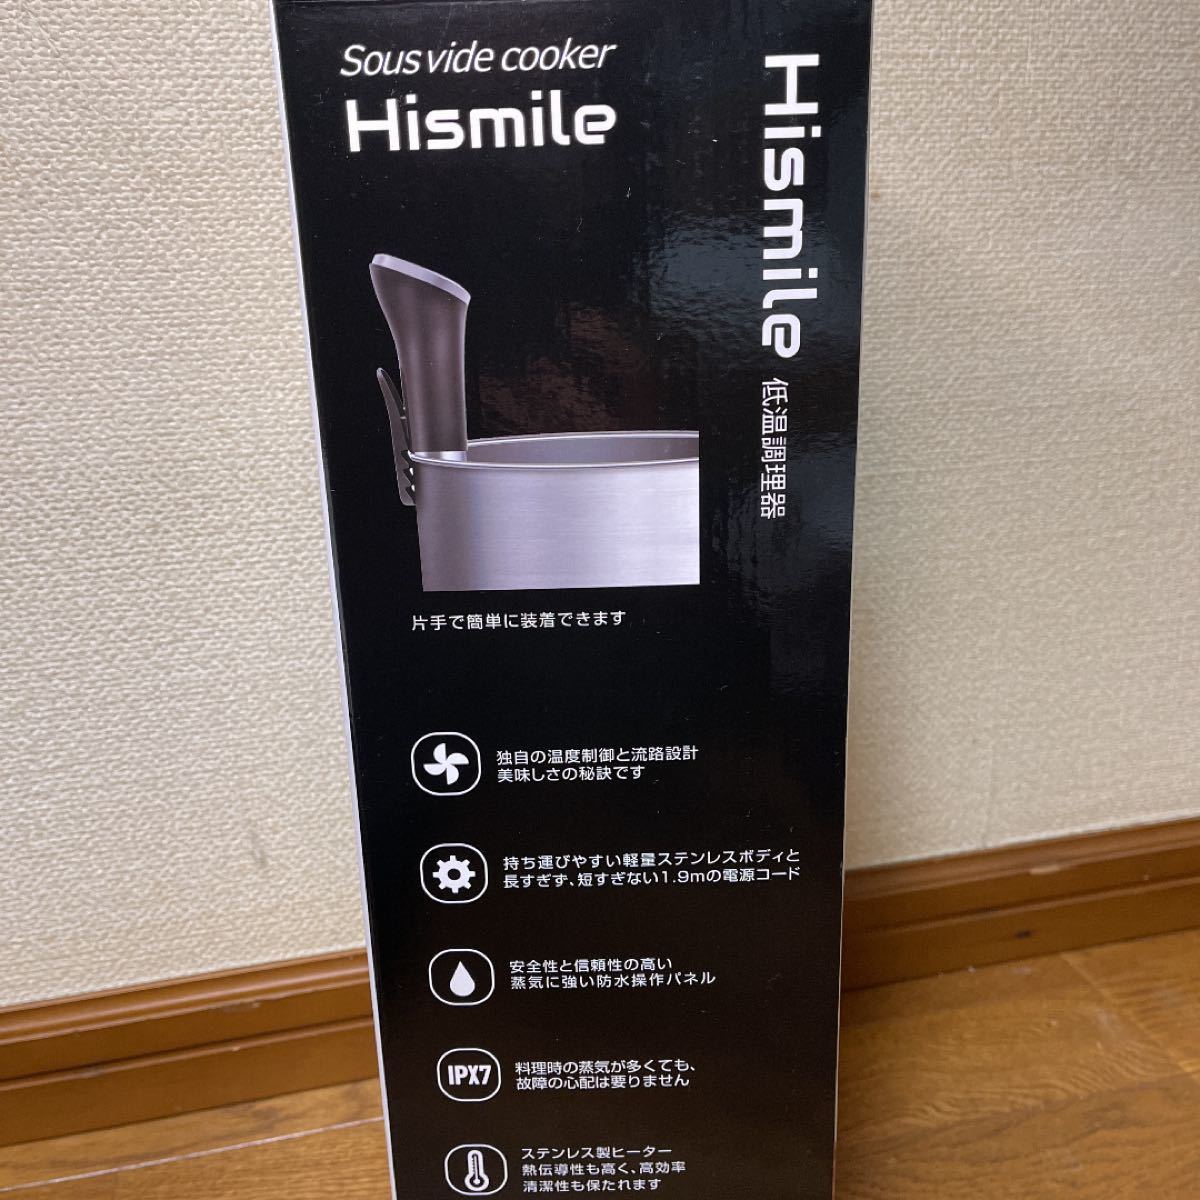 Hismile プレミアム　低温調理器 真空調理器 スロークッカー